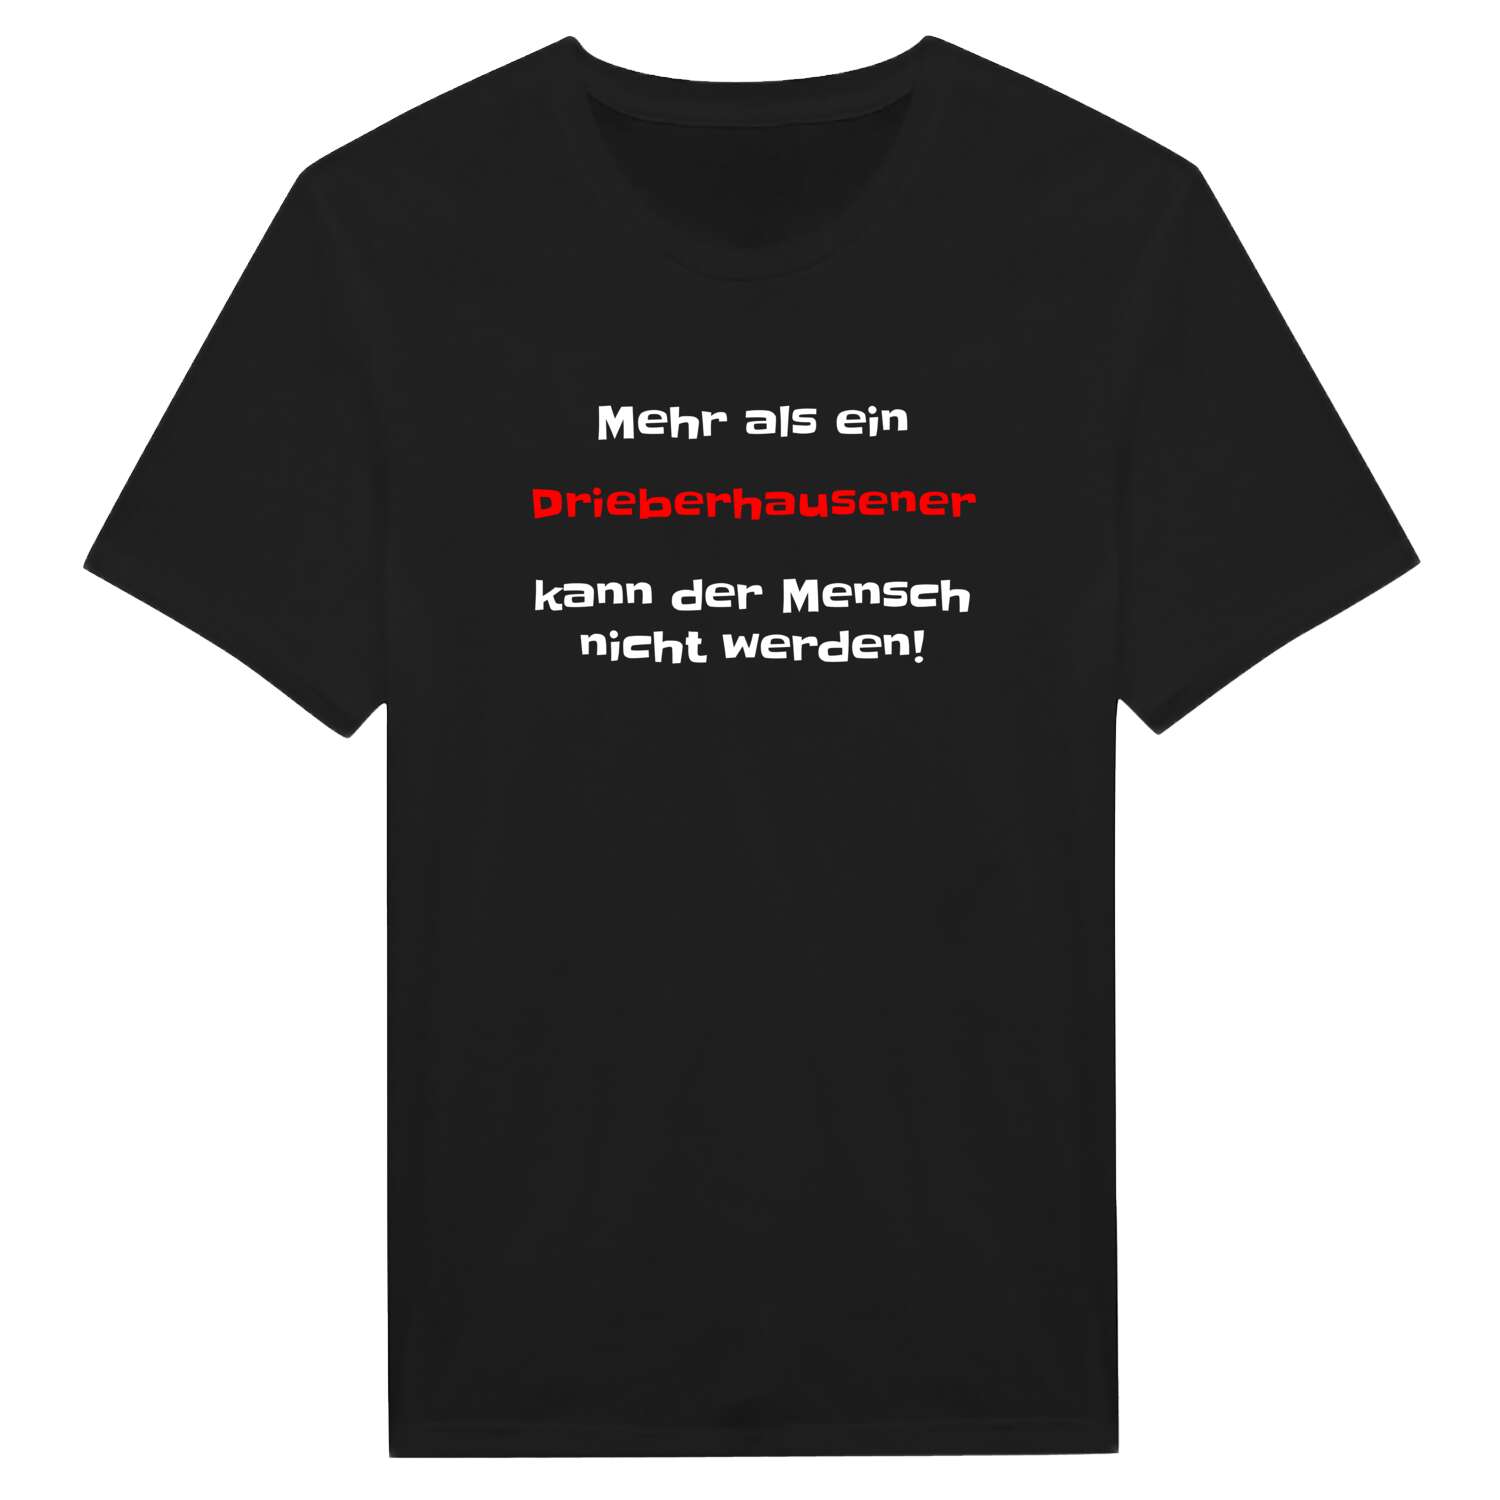 Drieberhausen T-Shirt »Mehr als ein«